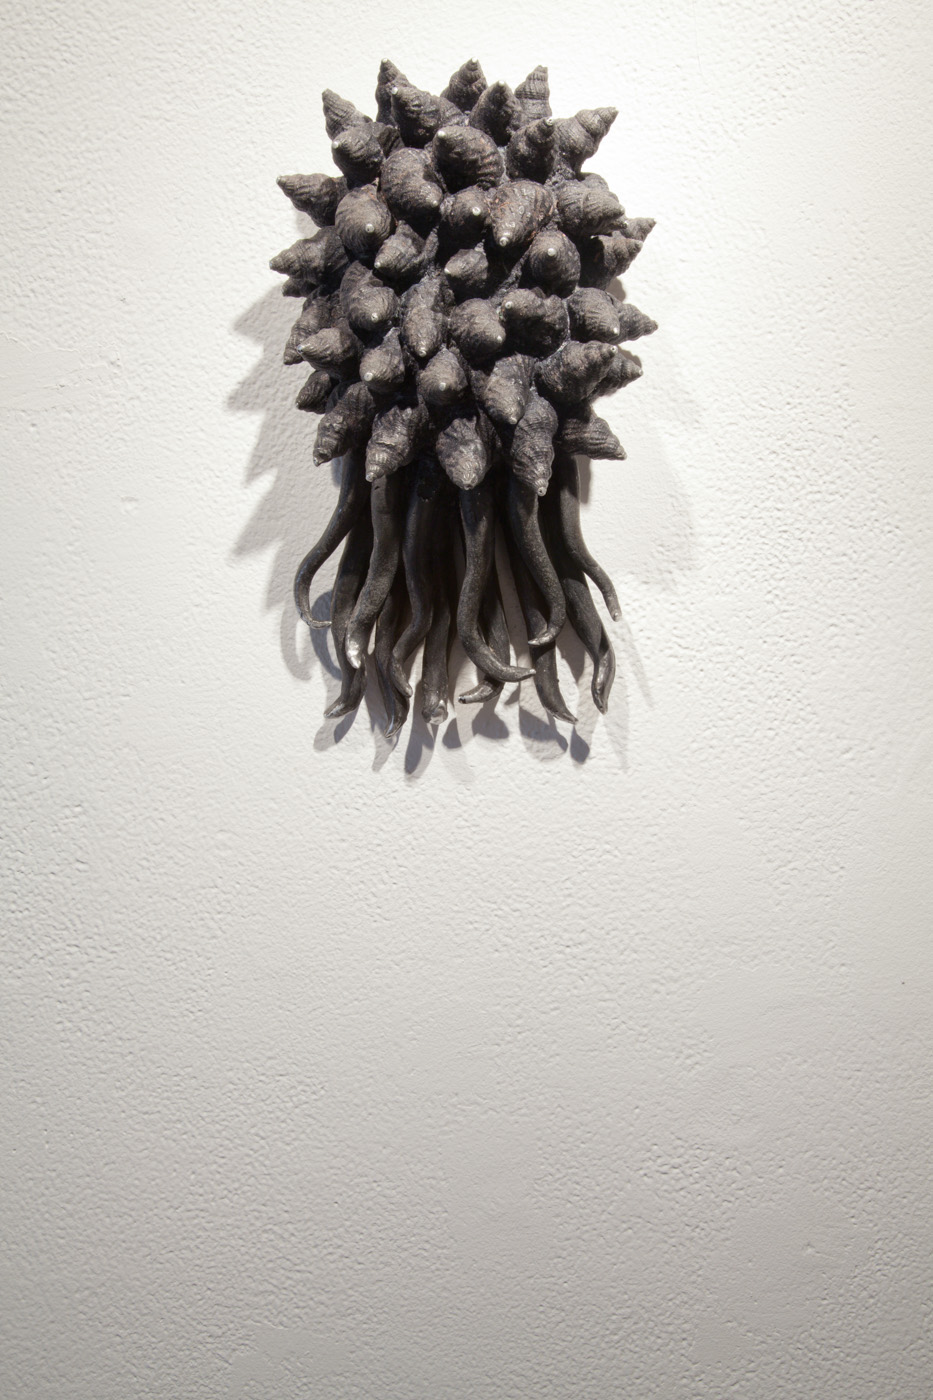 Sculpture installation by artist Rebecca Homapour